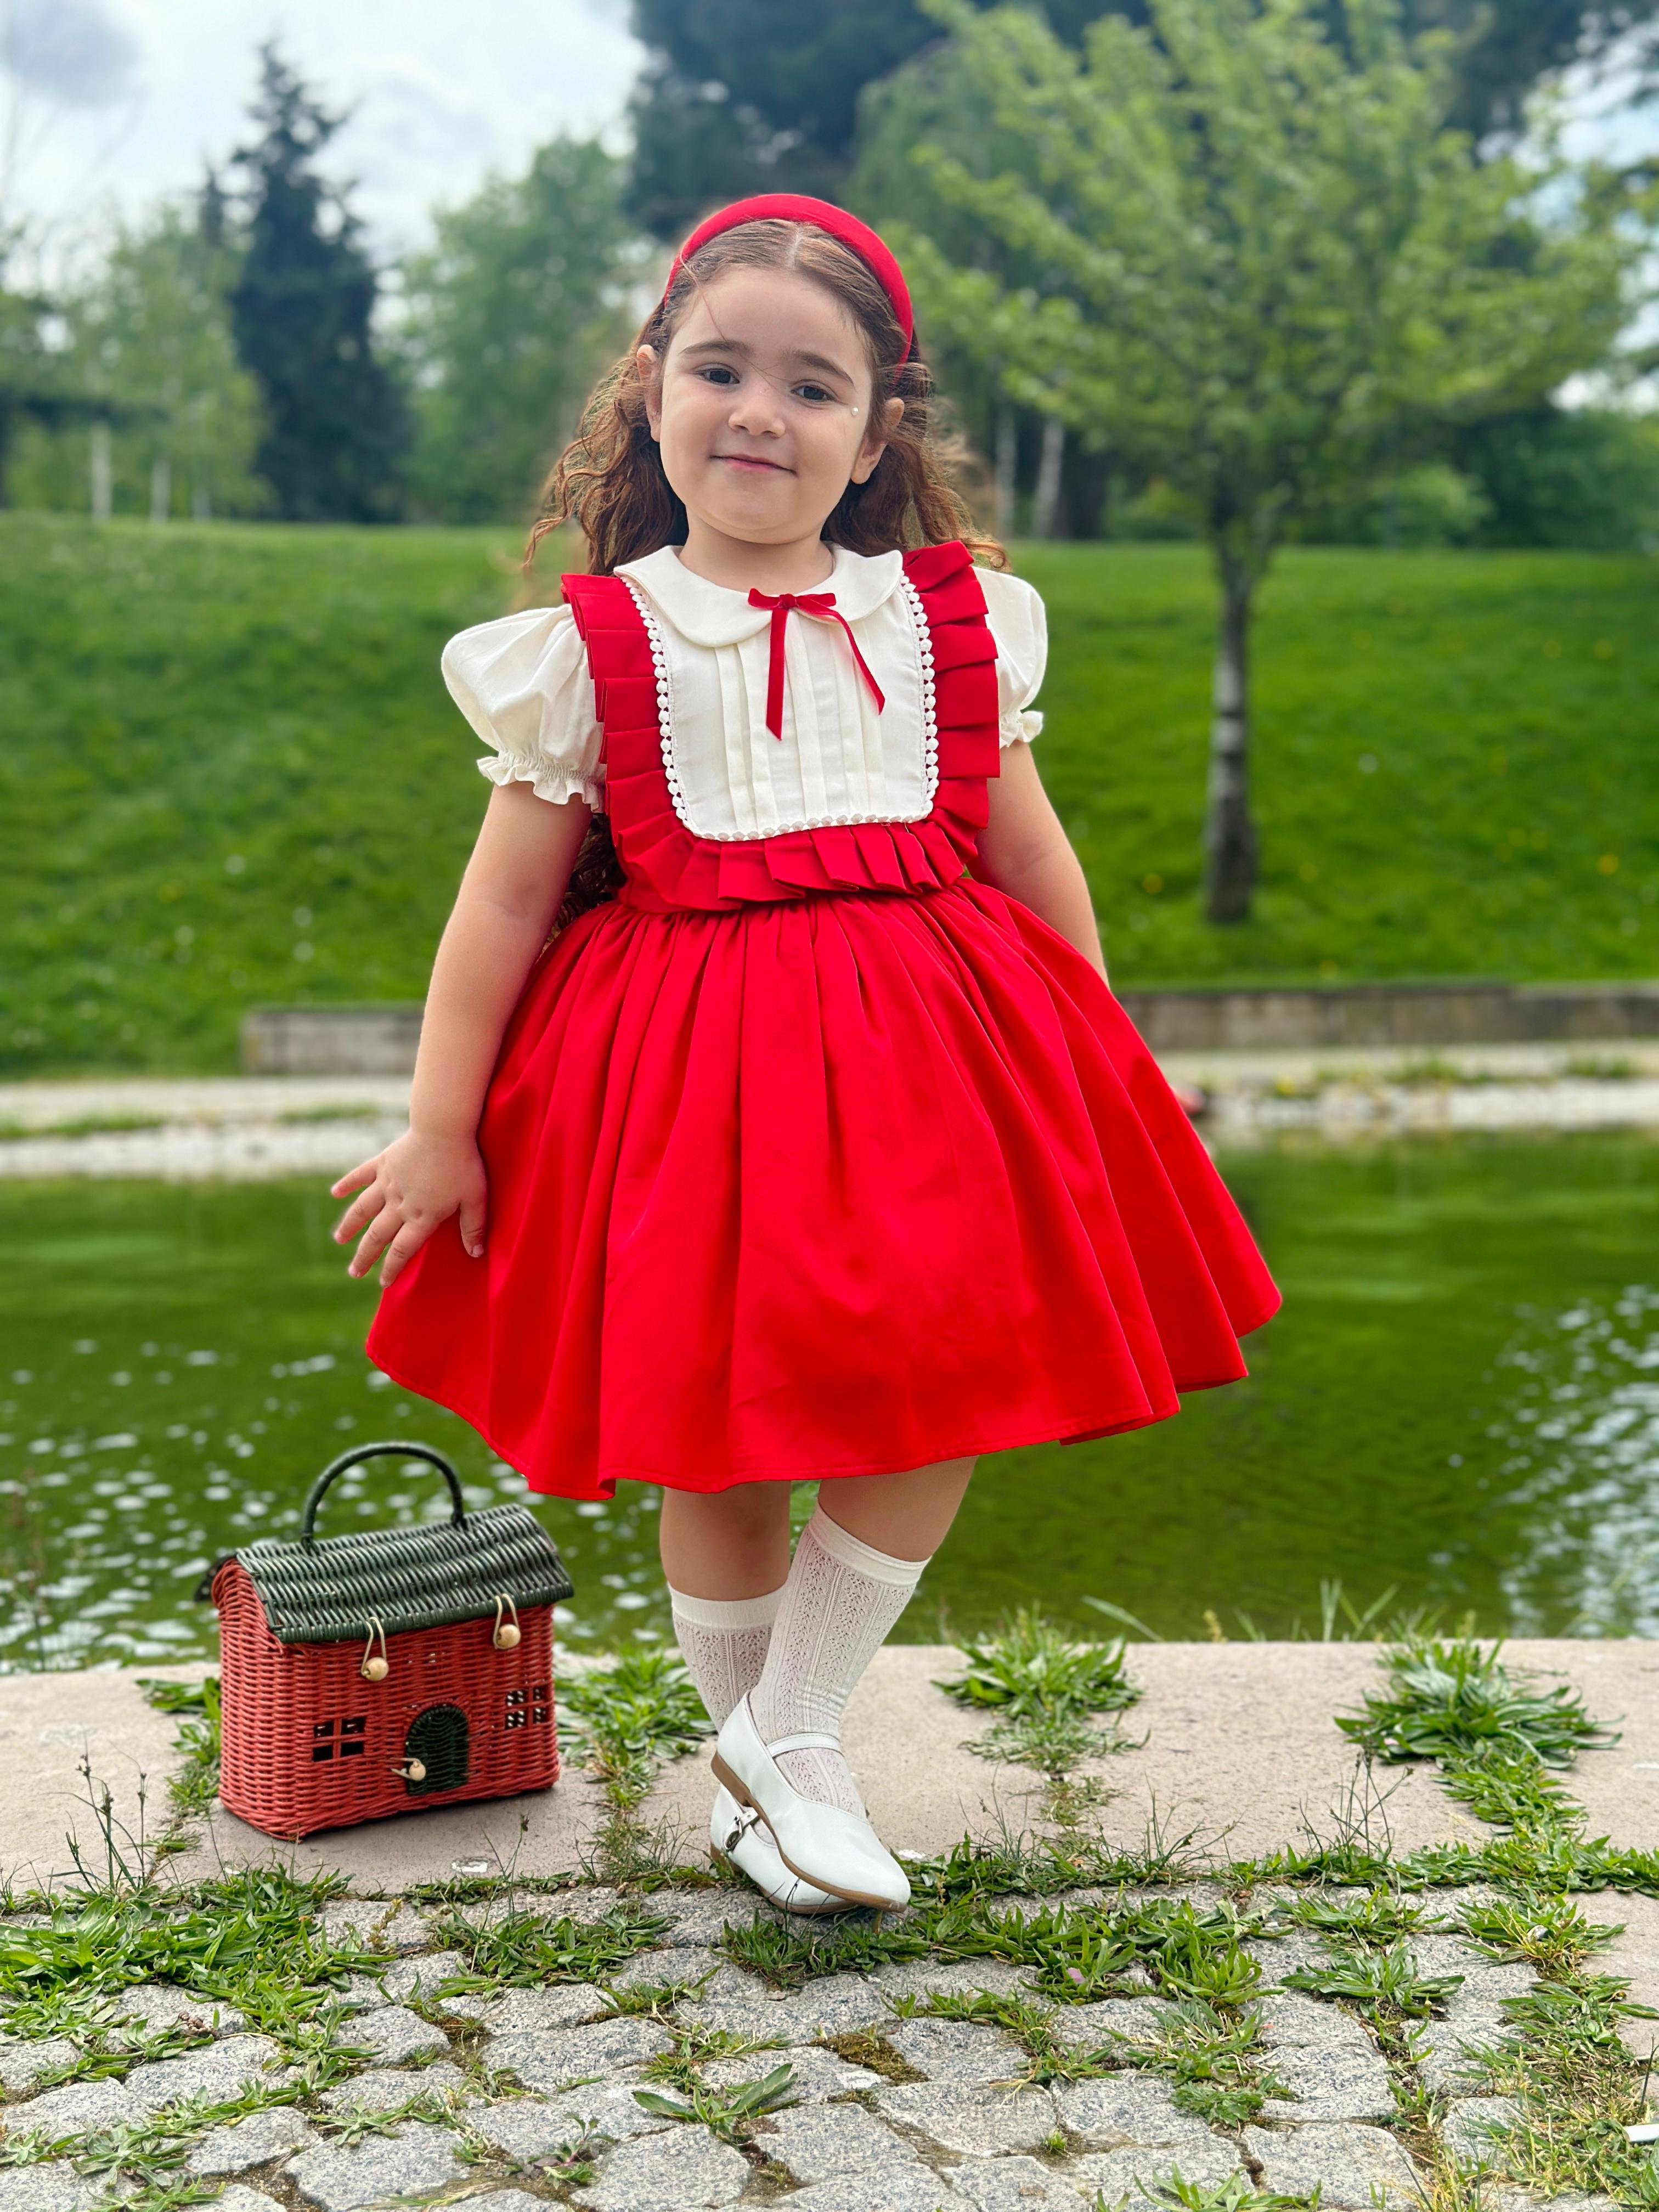 Kırmızılım Vintage Kız Bebek Elbisesi,Doğum günü,fotoğraf çekim elbise,0-12 Yaş Uygun